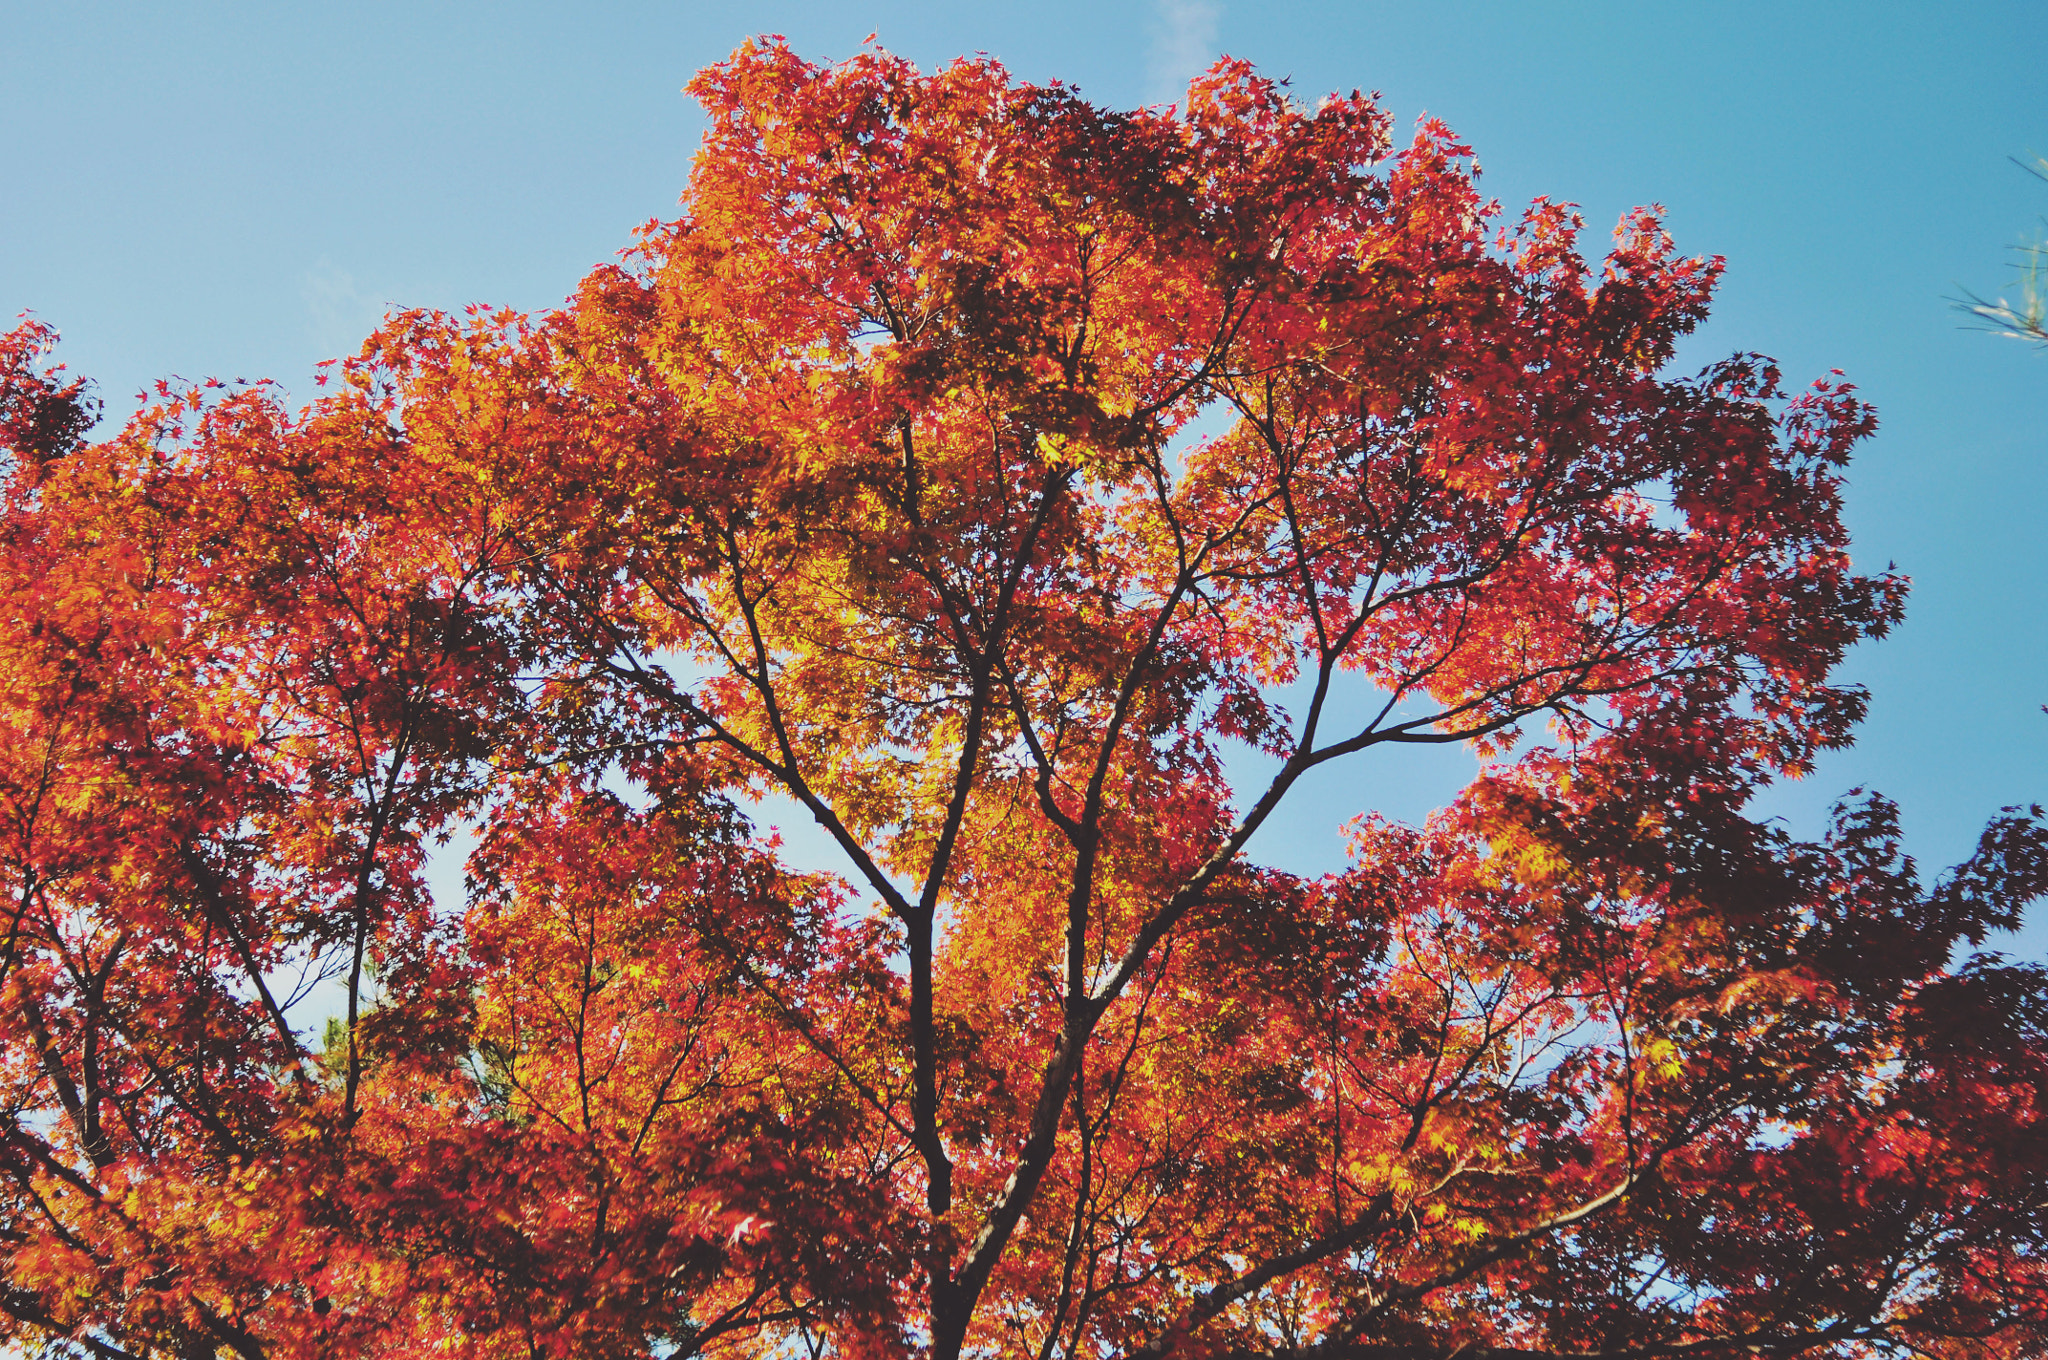 Nikon D90 + AF Nikkor 28mm f/2.8 sample photo. Autumn leaves and blue sky photography